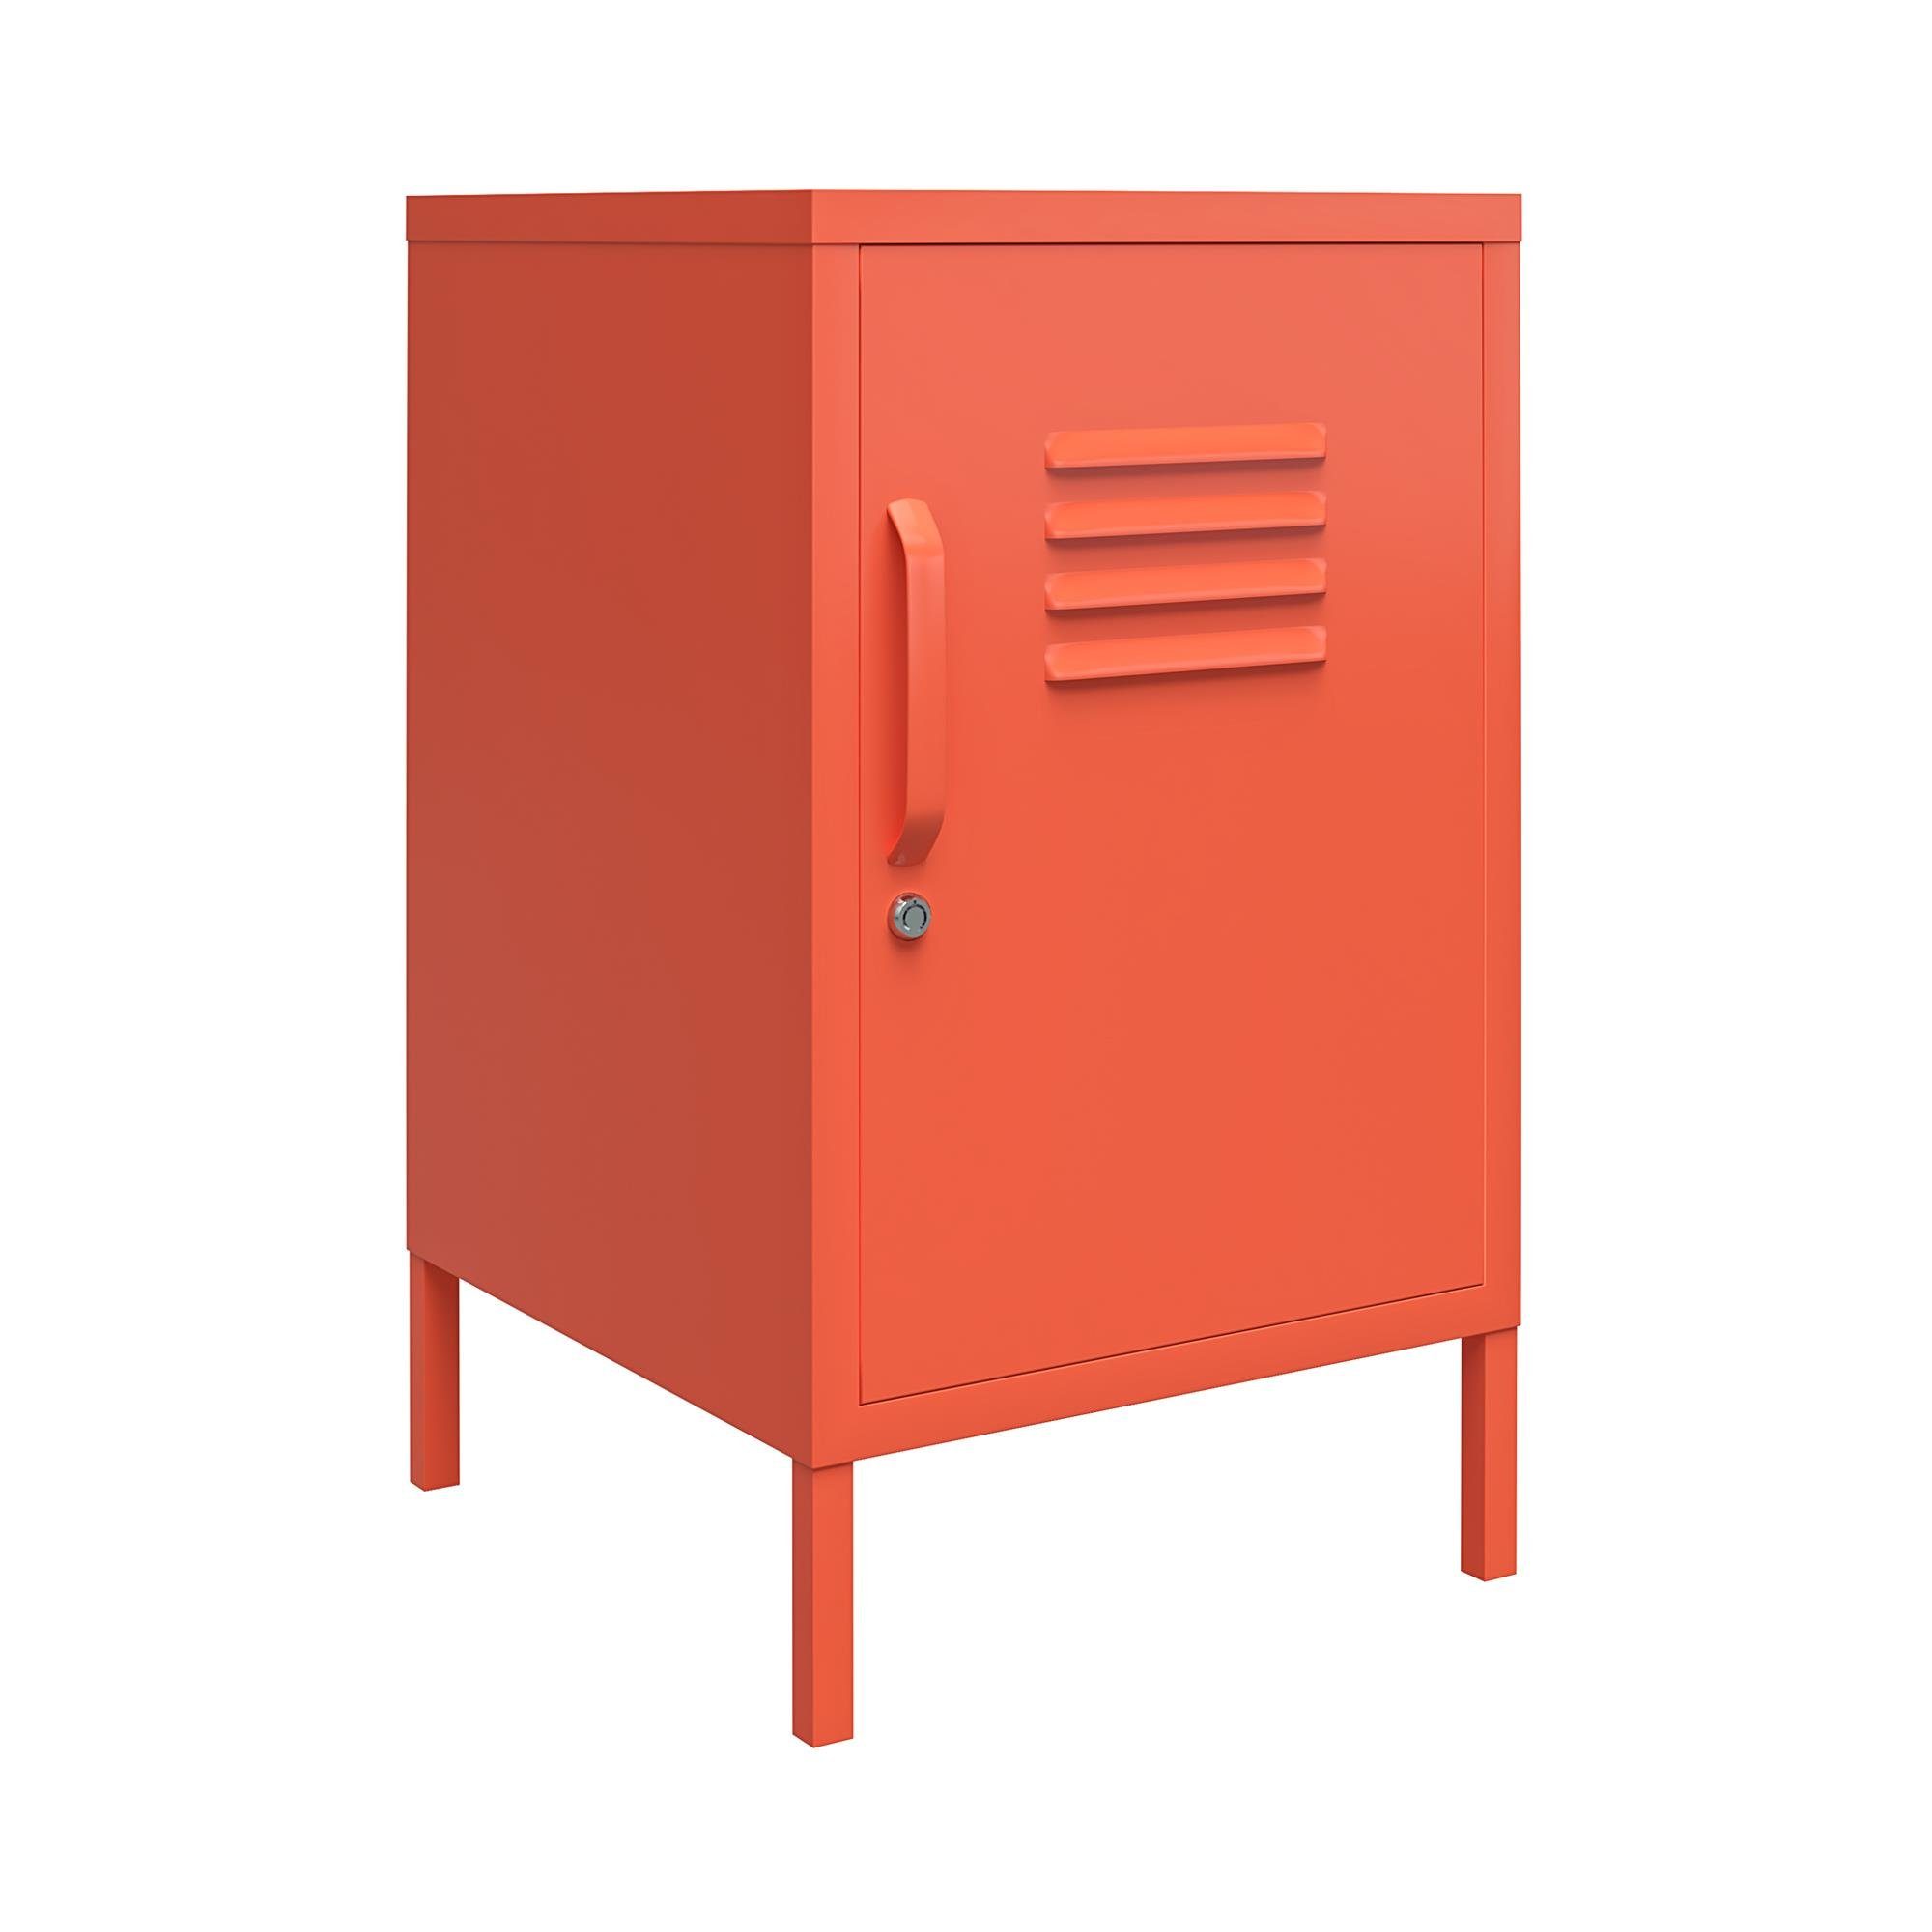 loft24 Nachtschrank Cache aus Metall im Spint-Look, abschließbar, Retro-Design orange